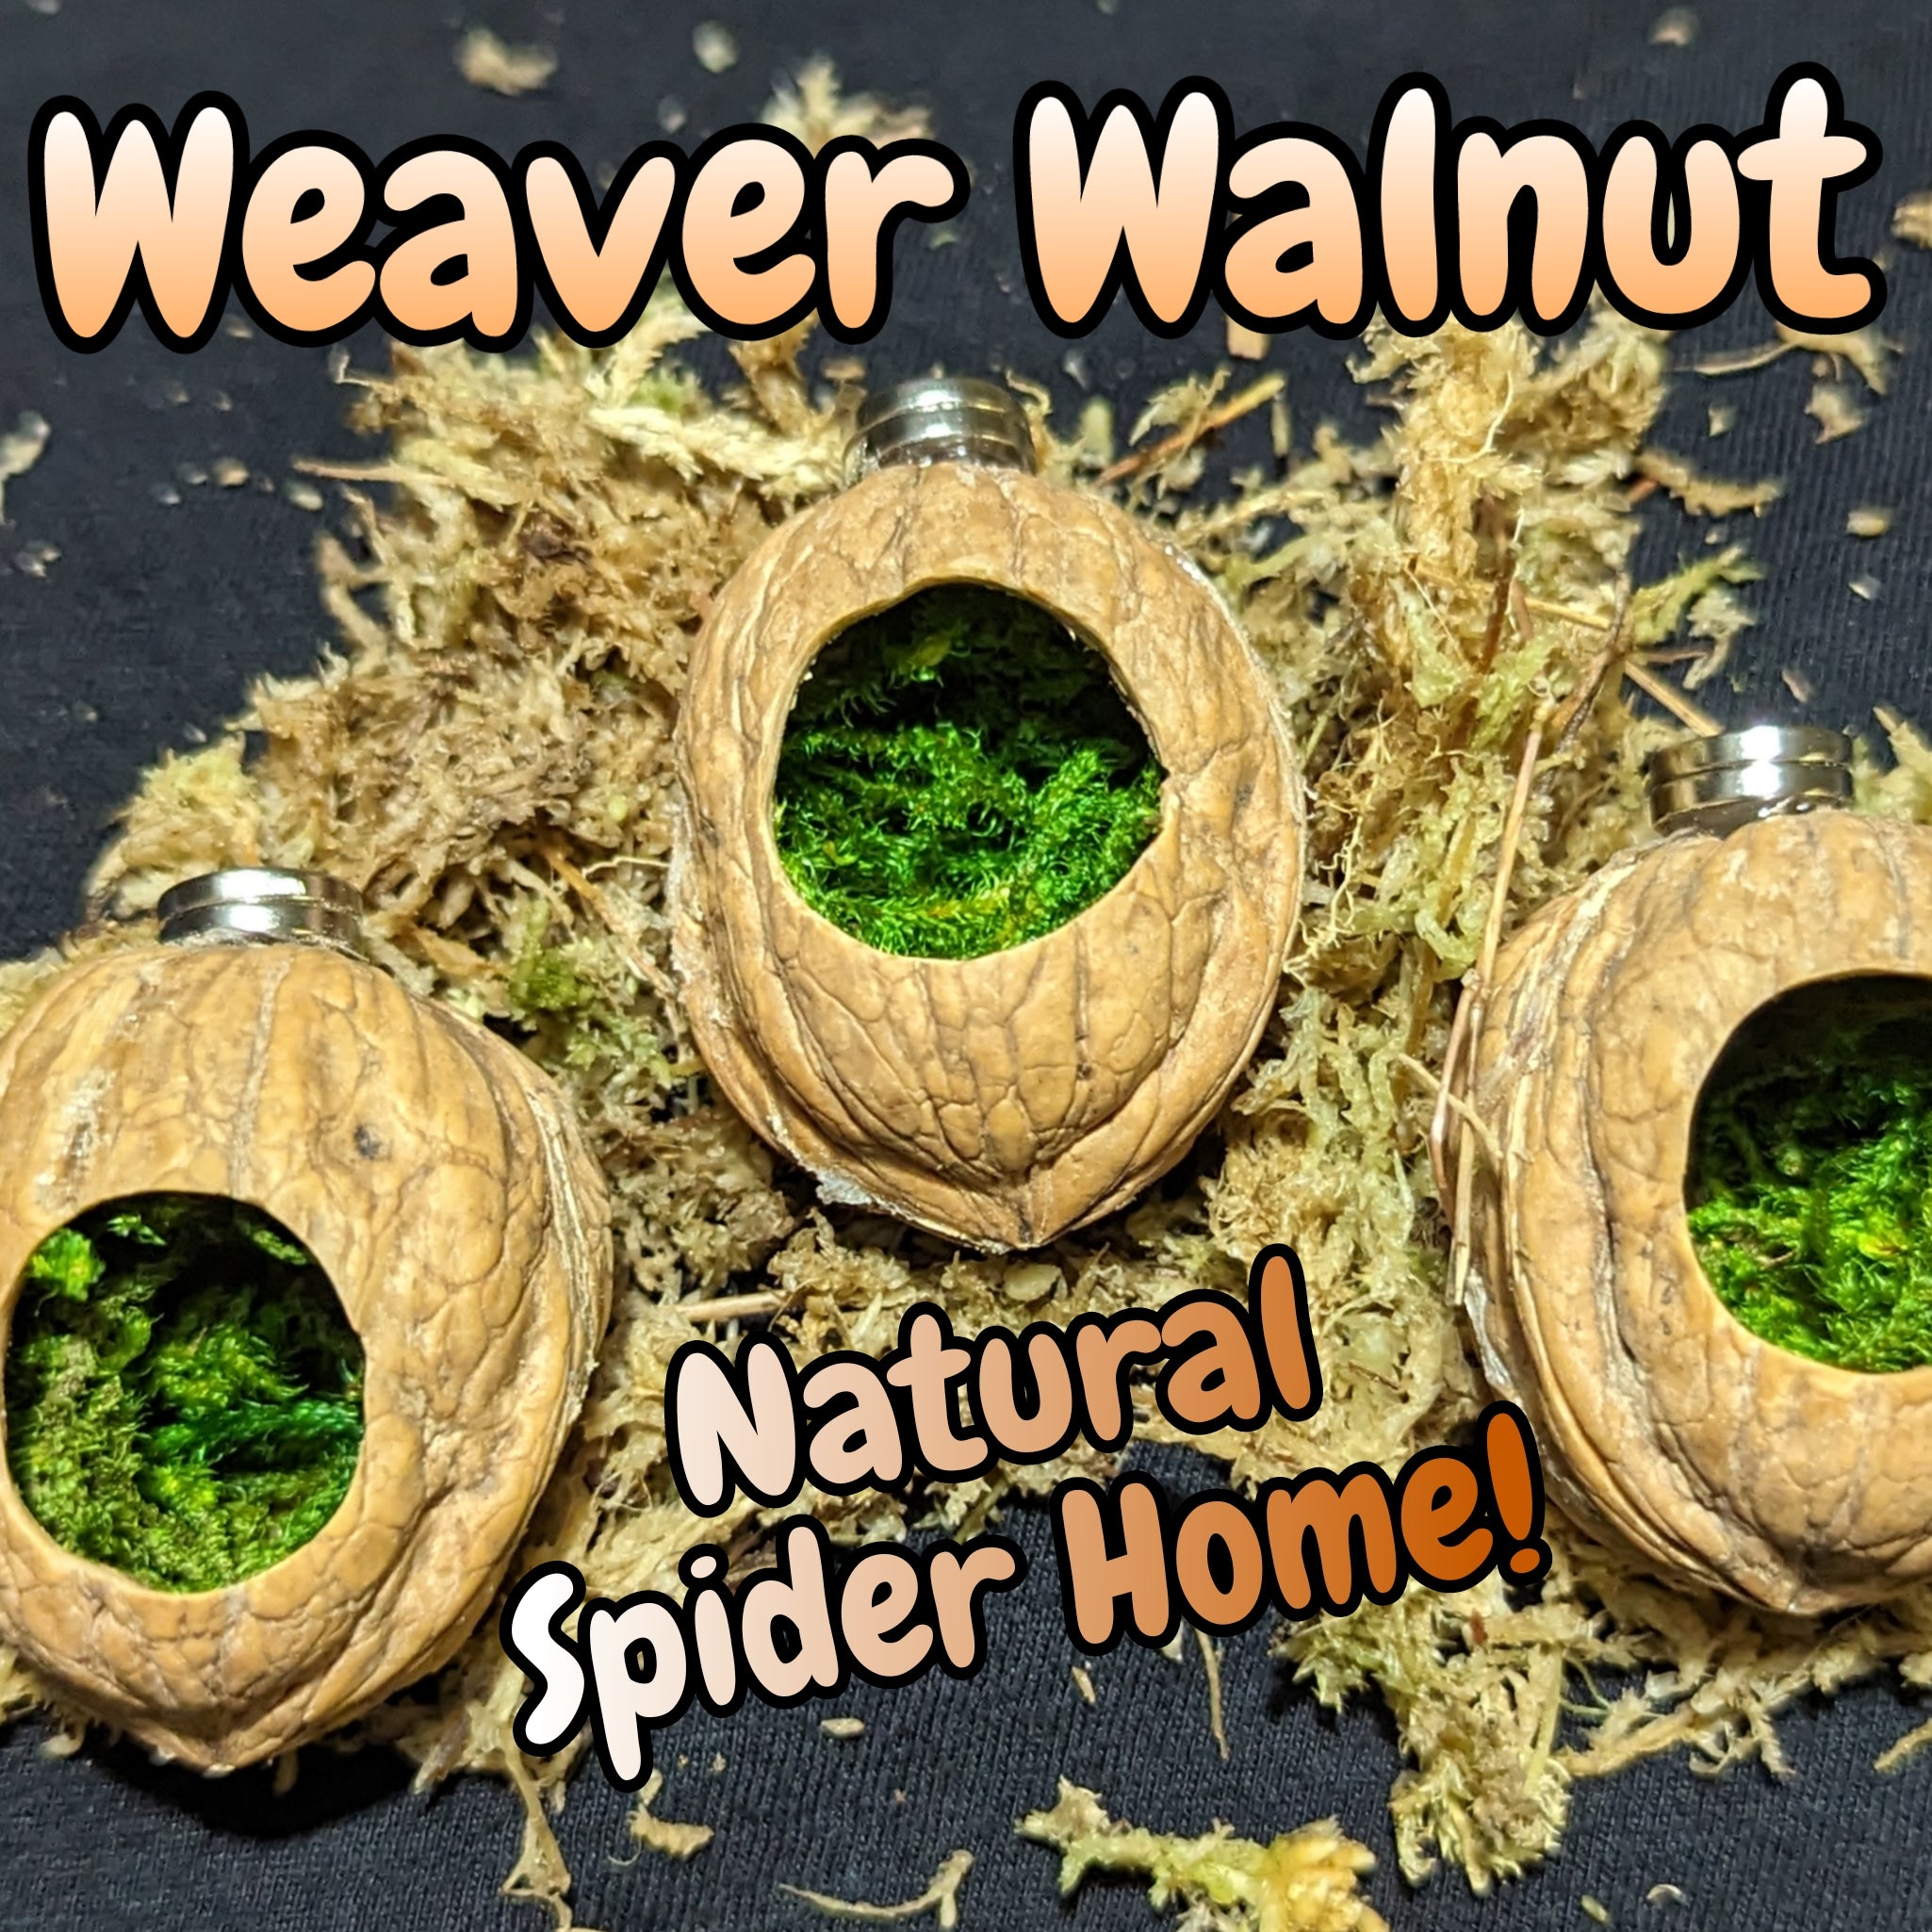 Weaver Walnut Spider Home